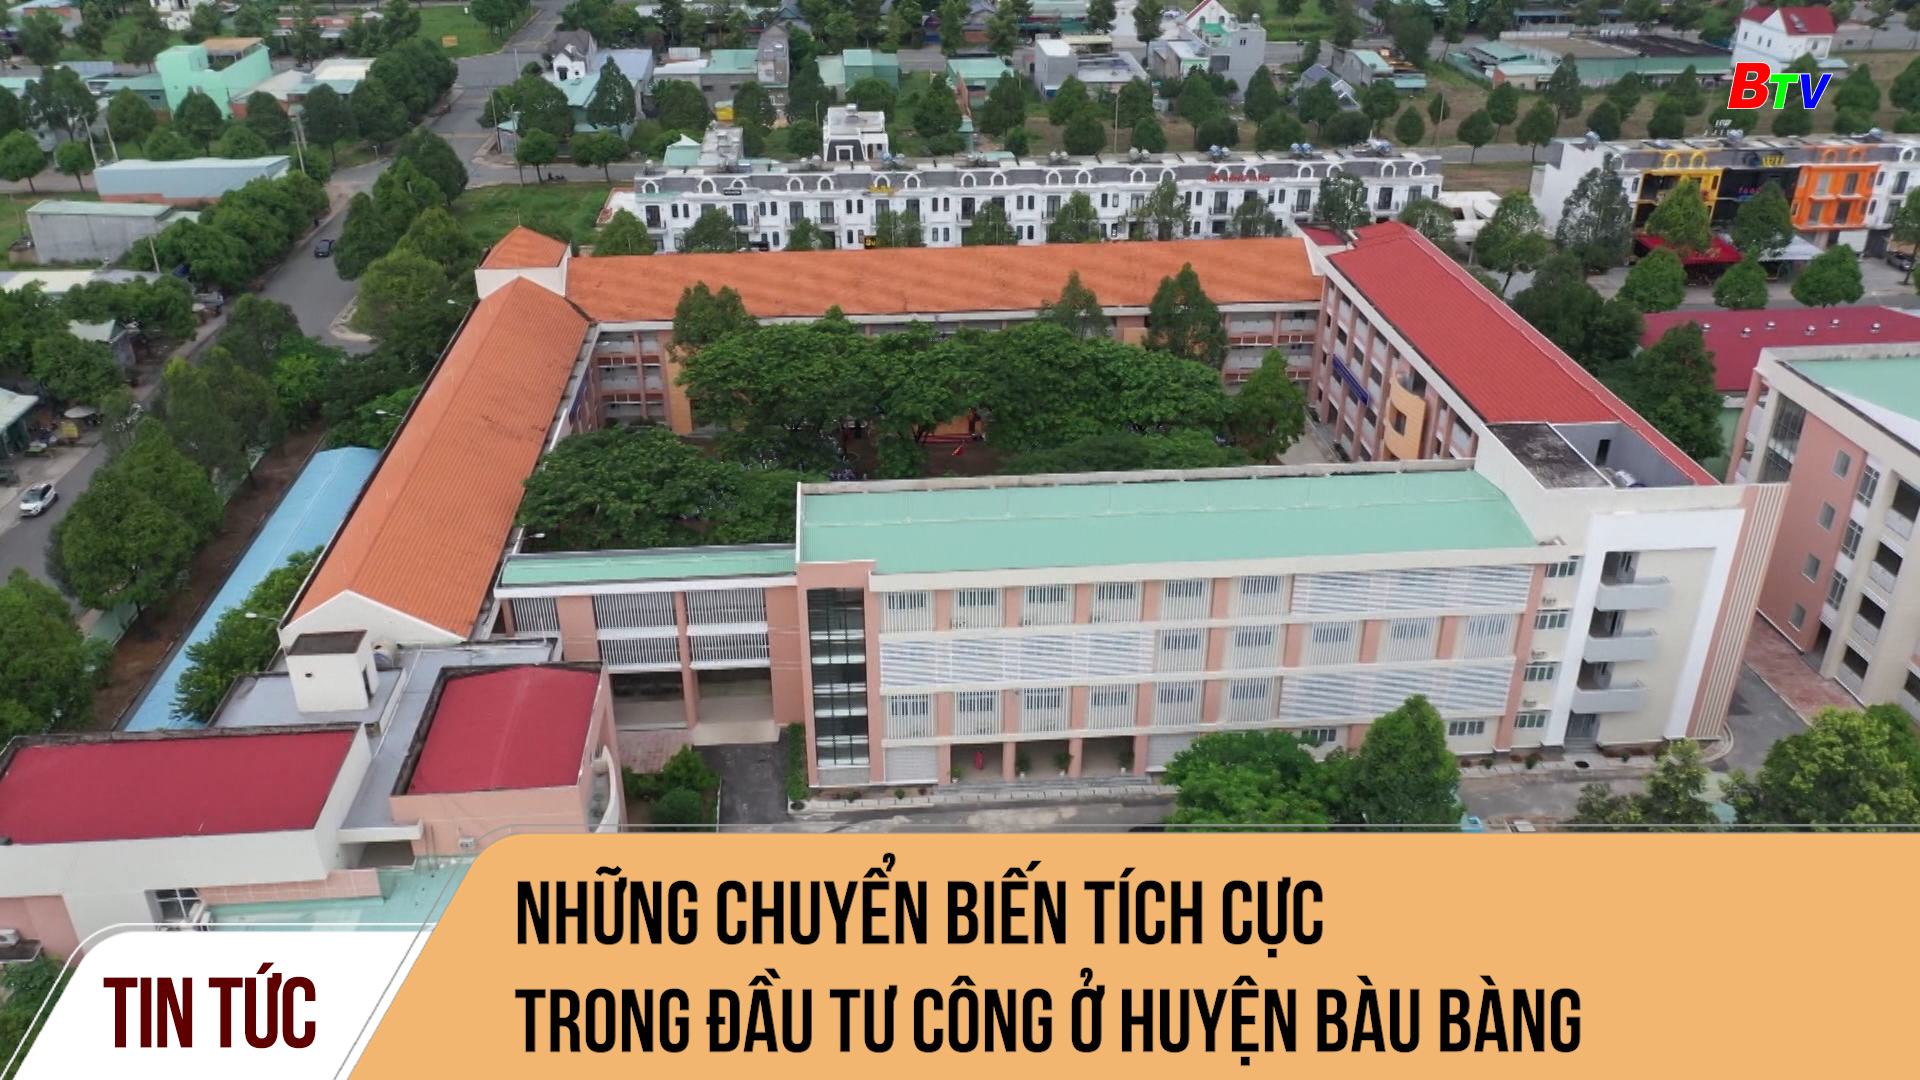 Những chuyển biến tích cực trong đầu tư công ở huyện Bàu Bàng